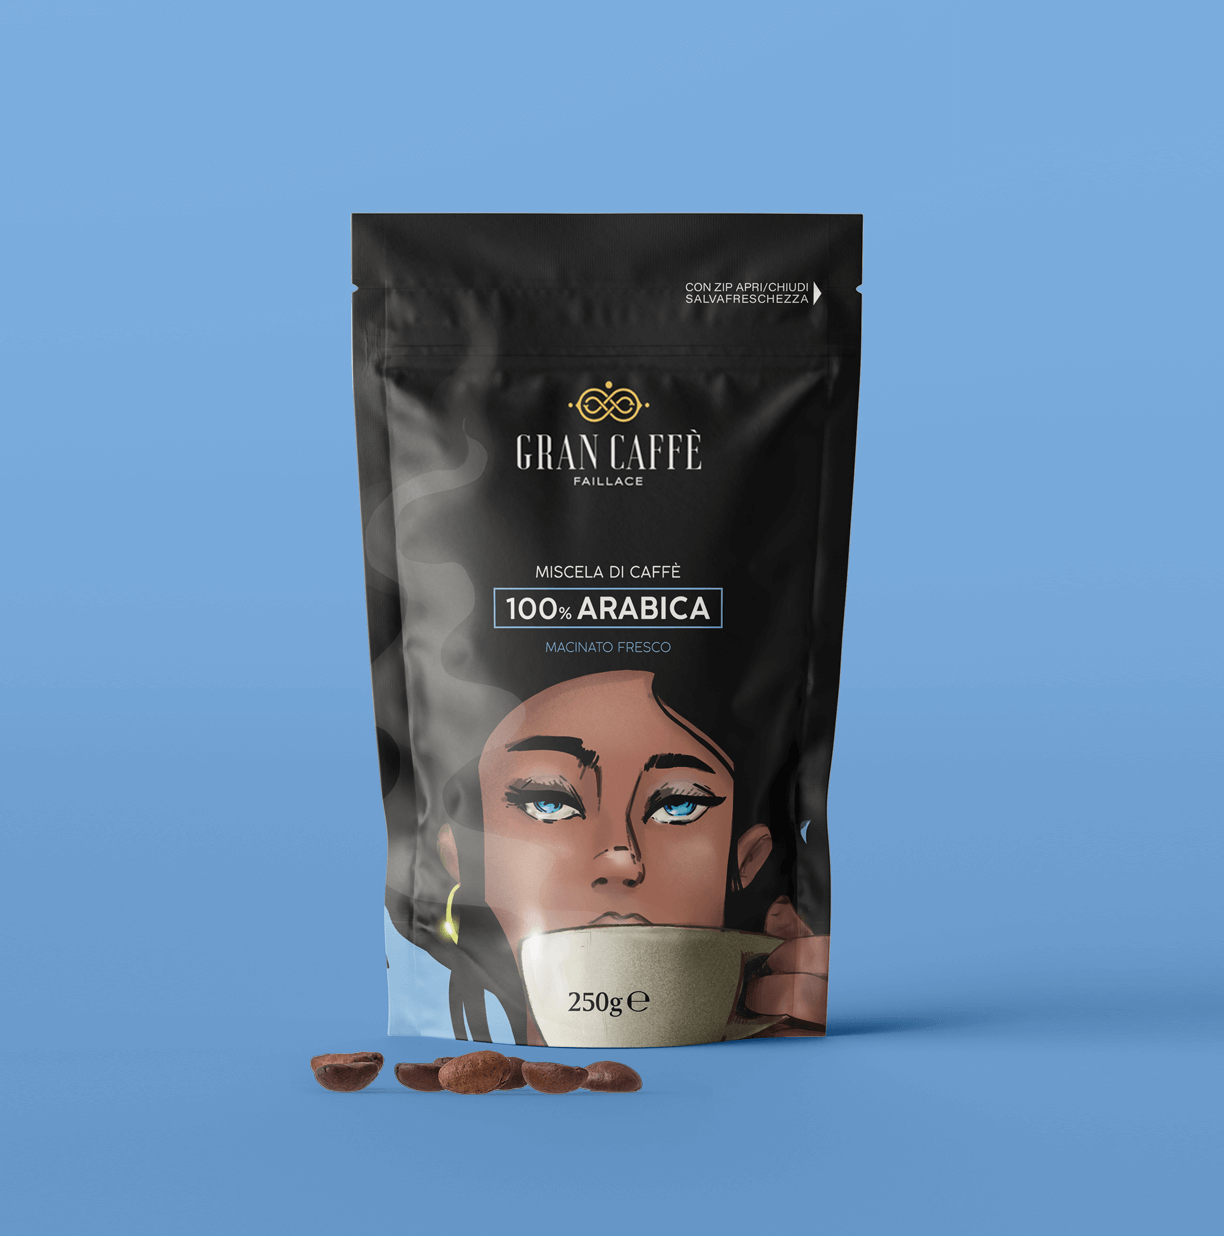 Studio La Regina - Gran Caffè Faillace - caffè 100% Arabica